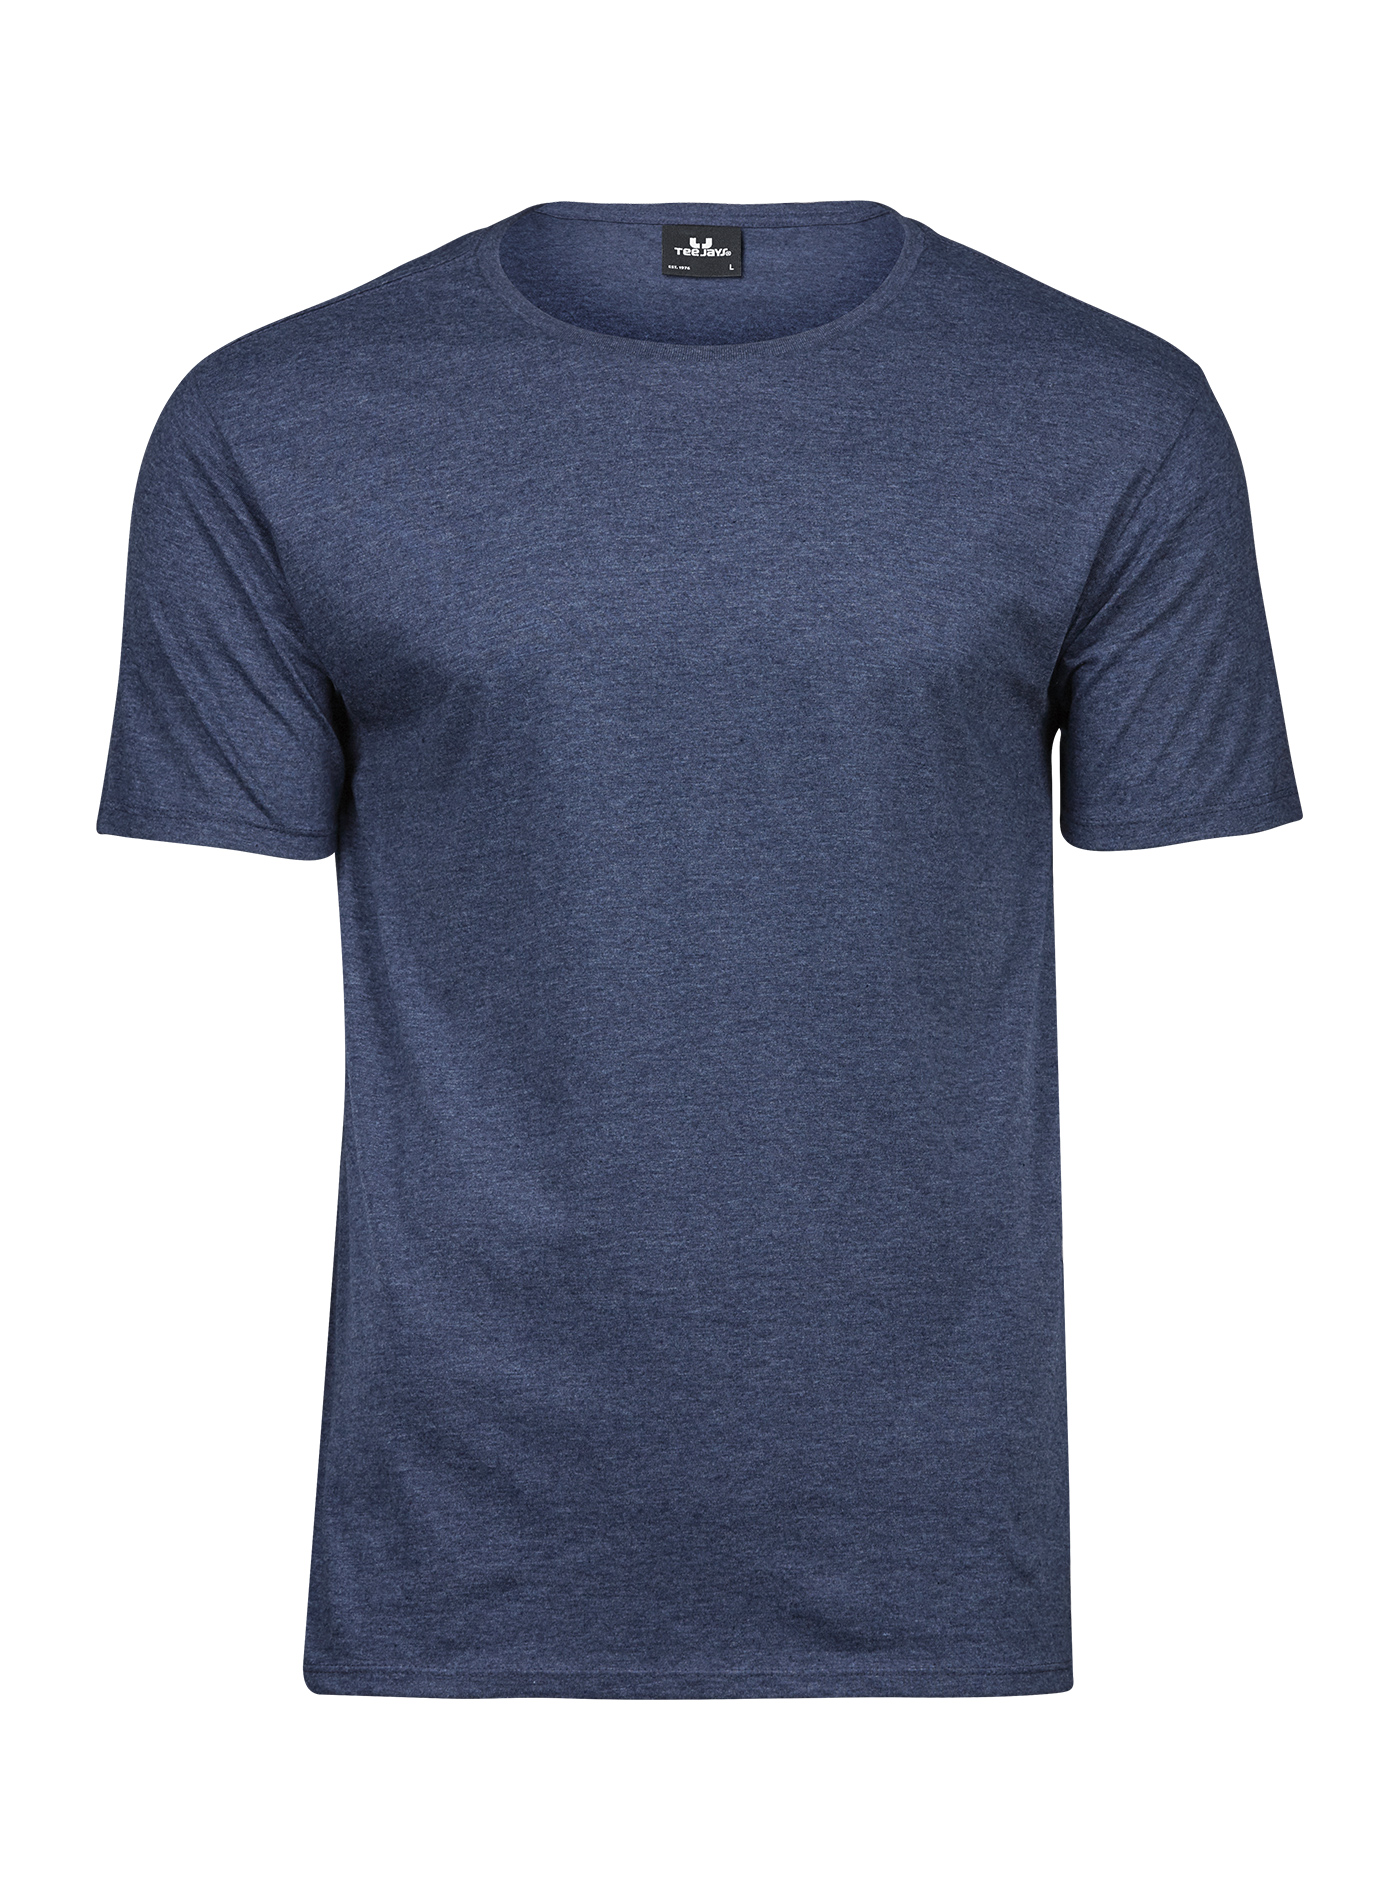 Pánské melírované tričko Tee Jays - Džínově modrá XXL